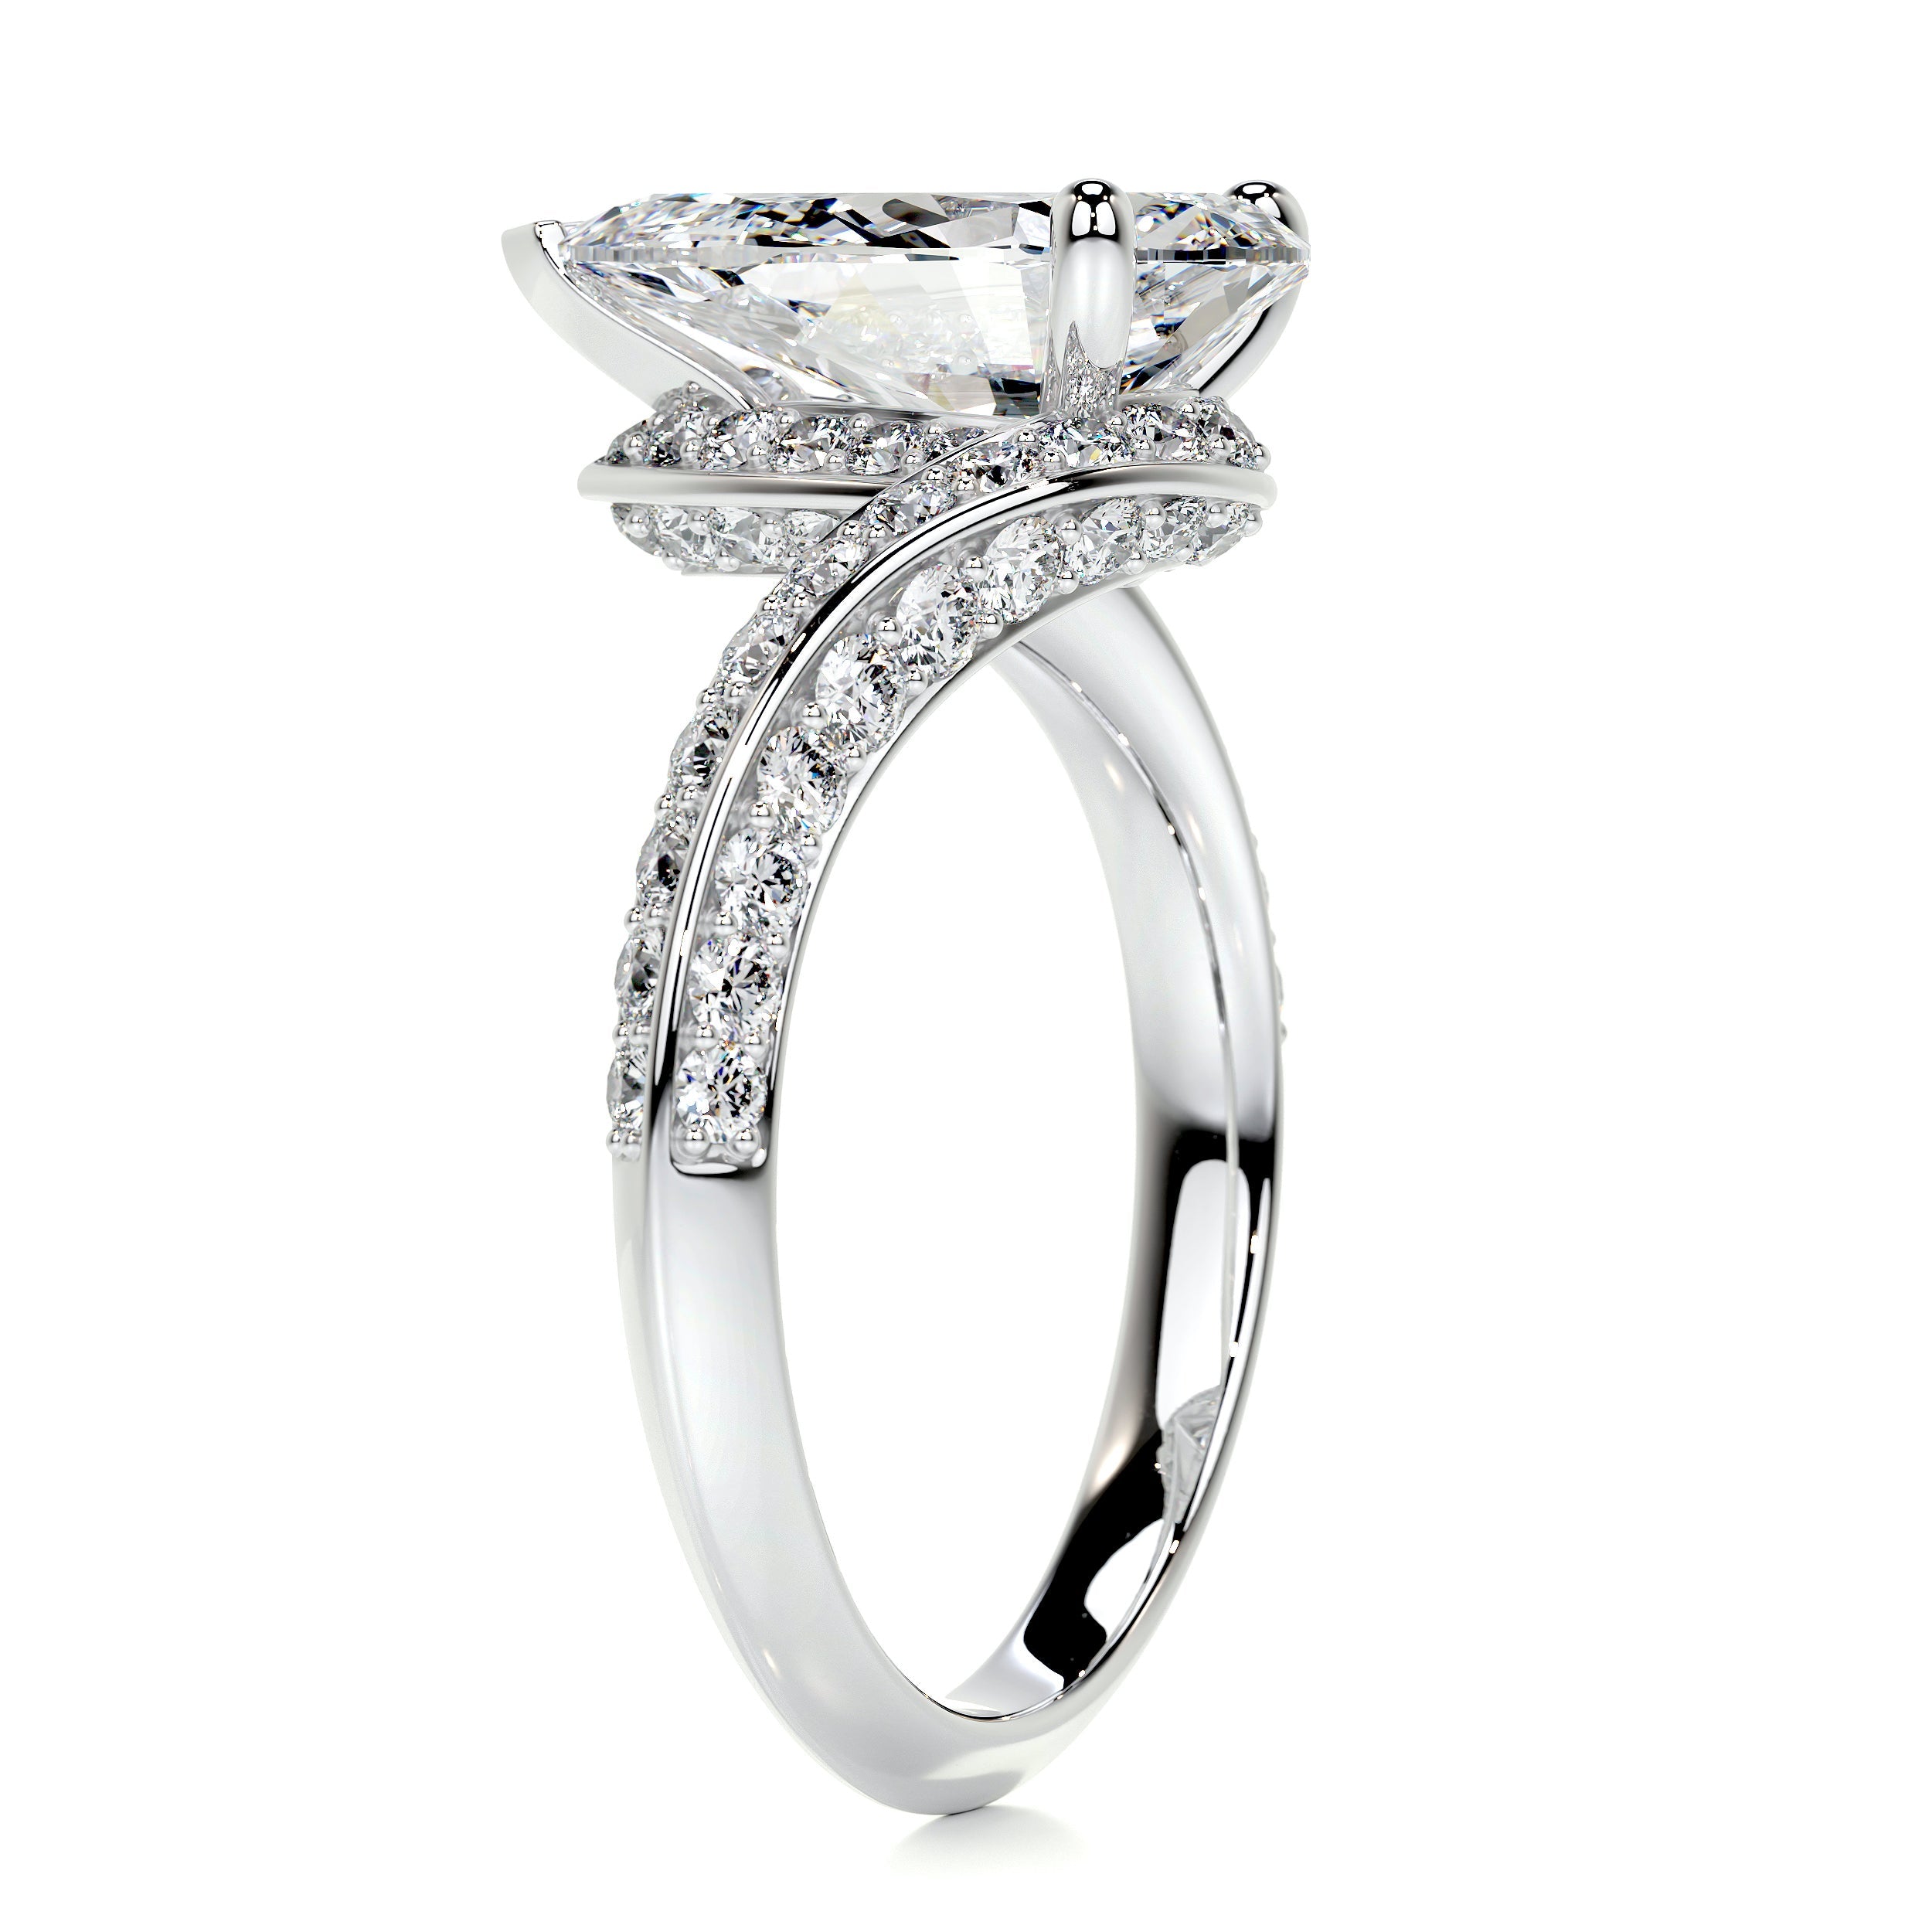 Sabrina Diamond Engagement Ring   (2.5 Carat) -14K White Gold (RTS)